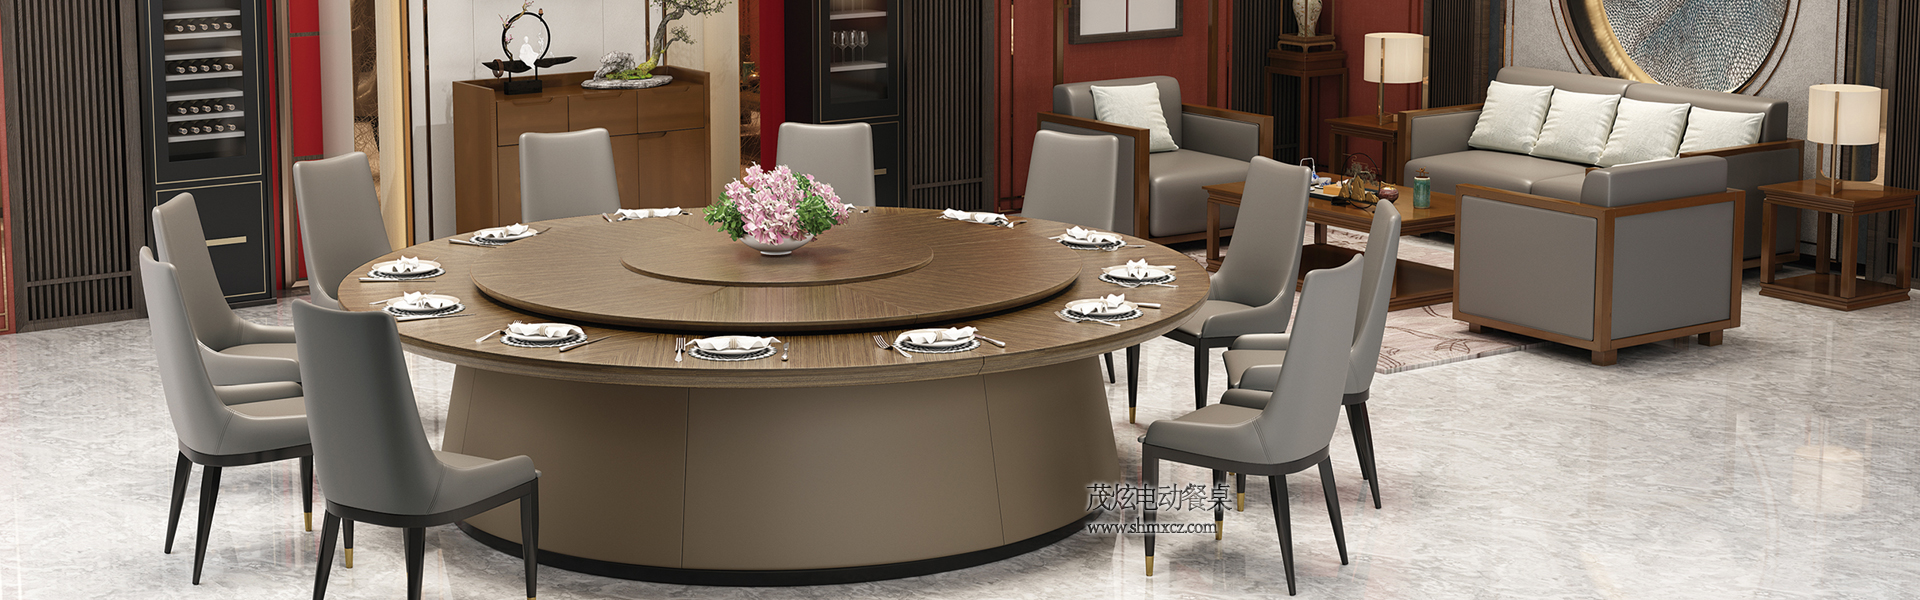 新中式電動餐桌(zhuo)輕奢